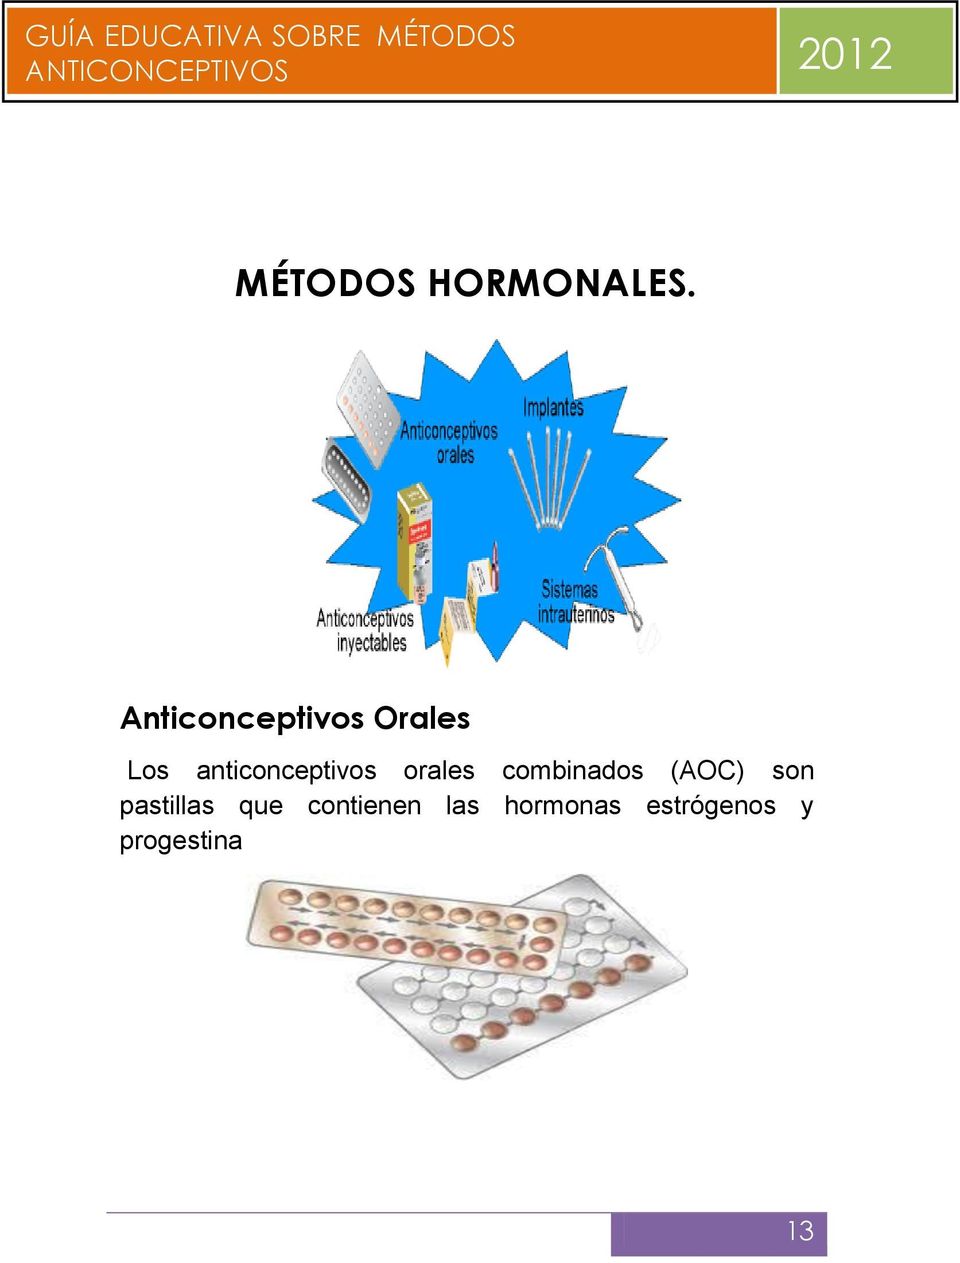 anticonceptivos orales combinados